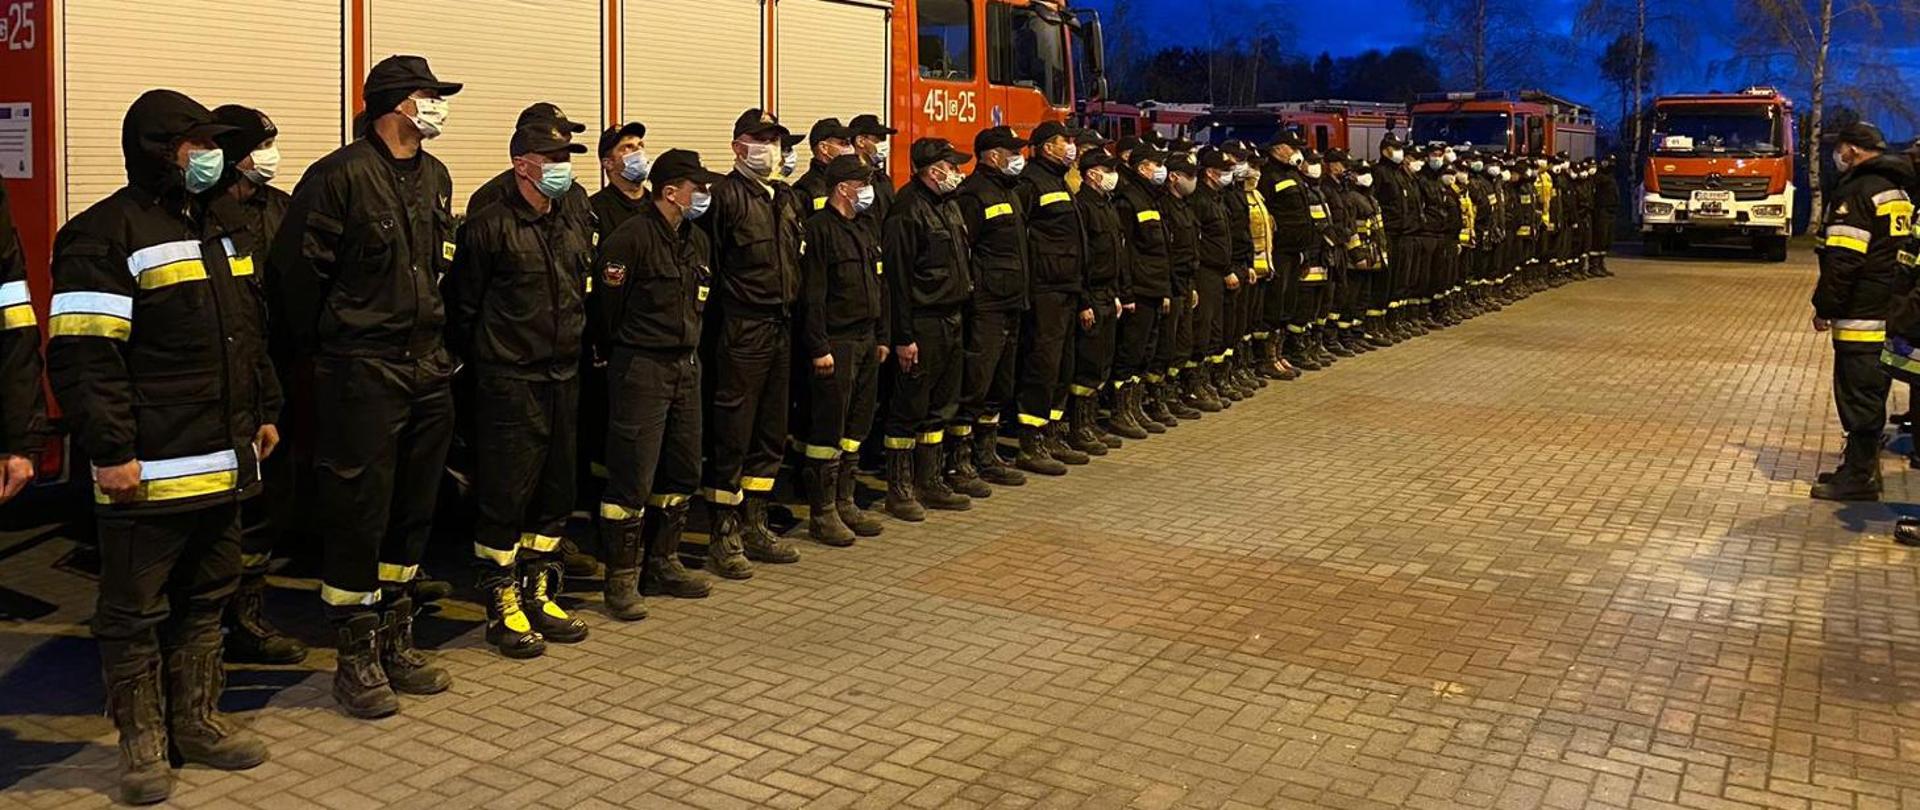 Na zdjęciu strażacy stojący w dwuszeregu podczas omówienia zadania przez prowadzącego ćwiczenia.